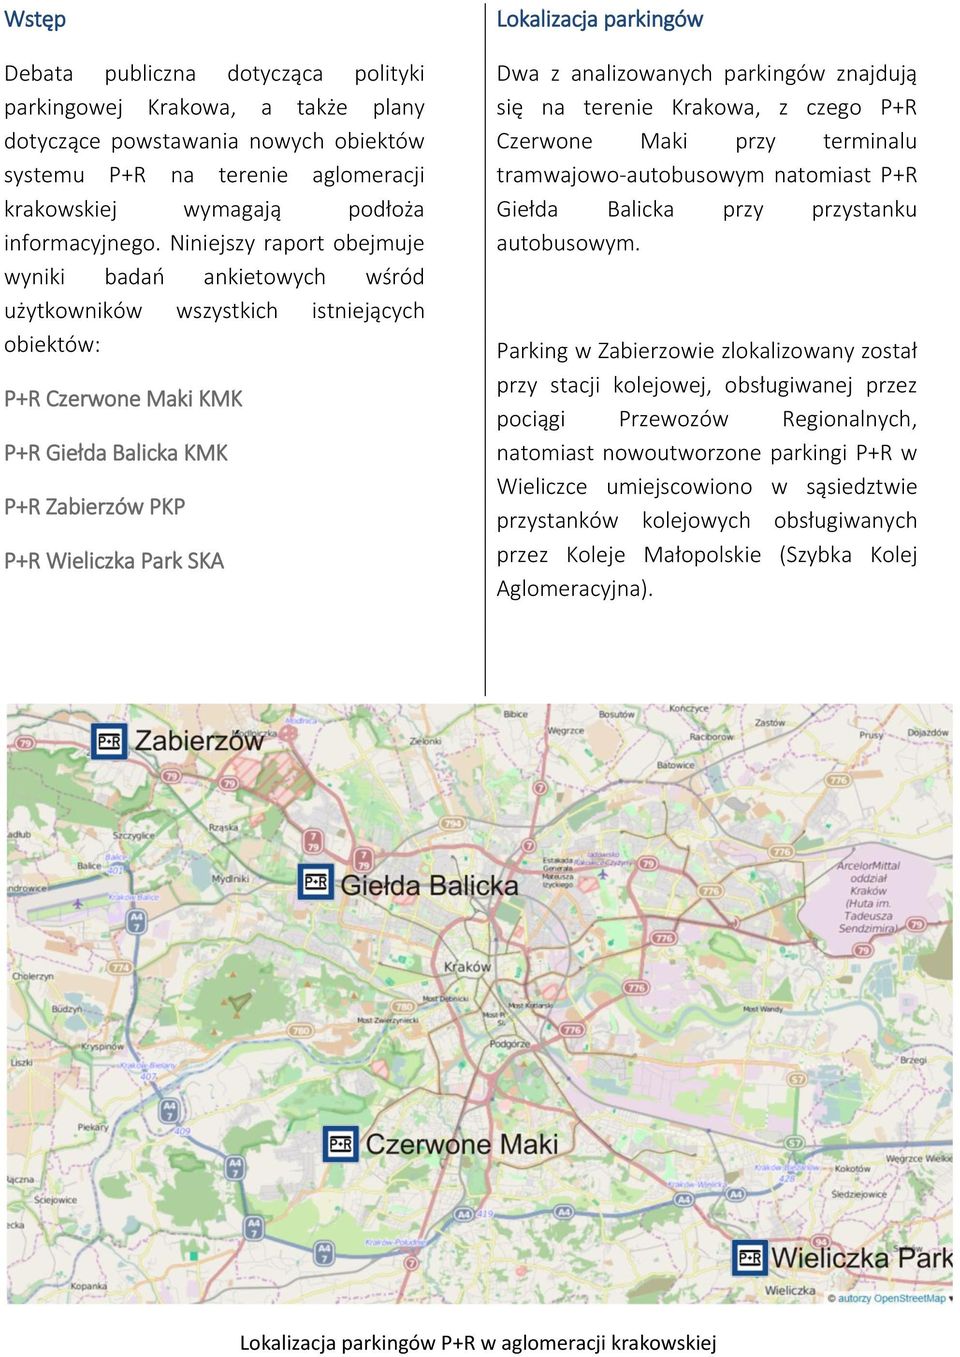 Lokalizacja parkingów Dwa z analizowanych parkingów znajdują się na terenie Krakowa, z czego P+R Czerwone Maki przy terminalu tramwajowo-autobusowym natomiast P+R Giełda Balicka przy przystanku